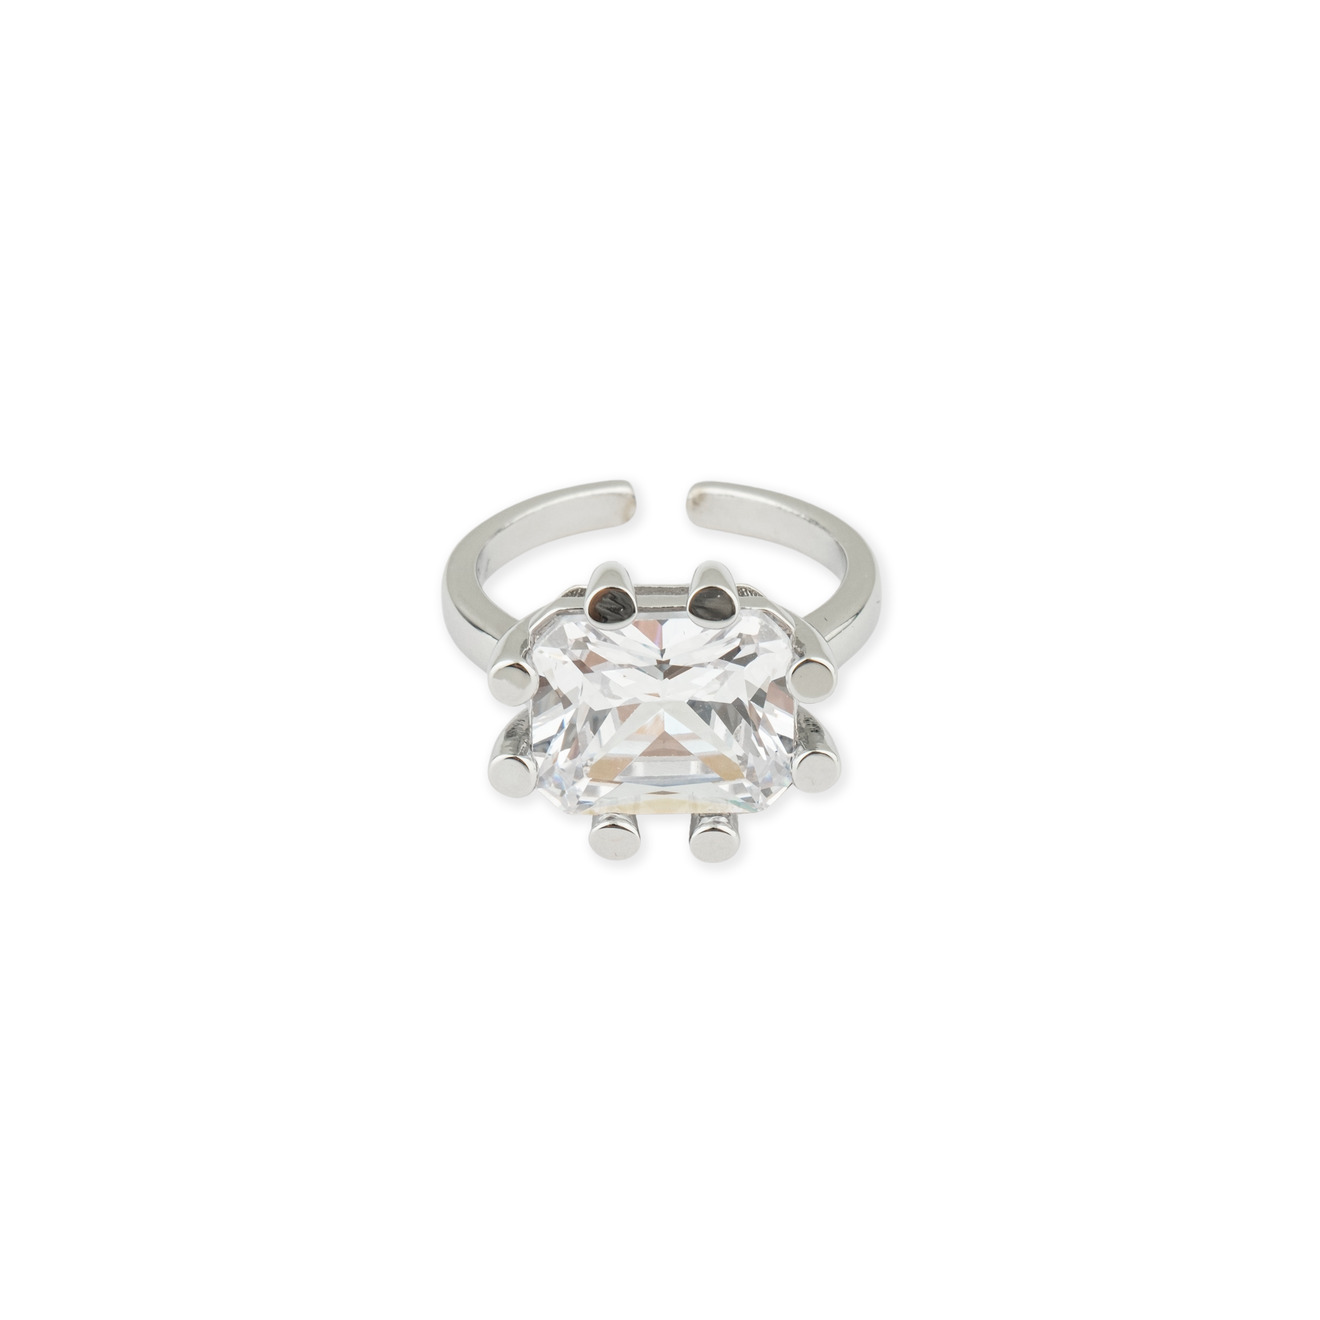 Herald Percy Серебристое кольцо с кристаллом herald percy золотистое фигурное кольцо с черным сердцем